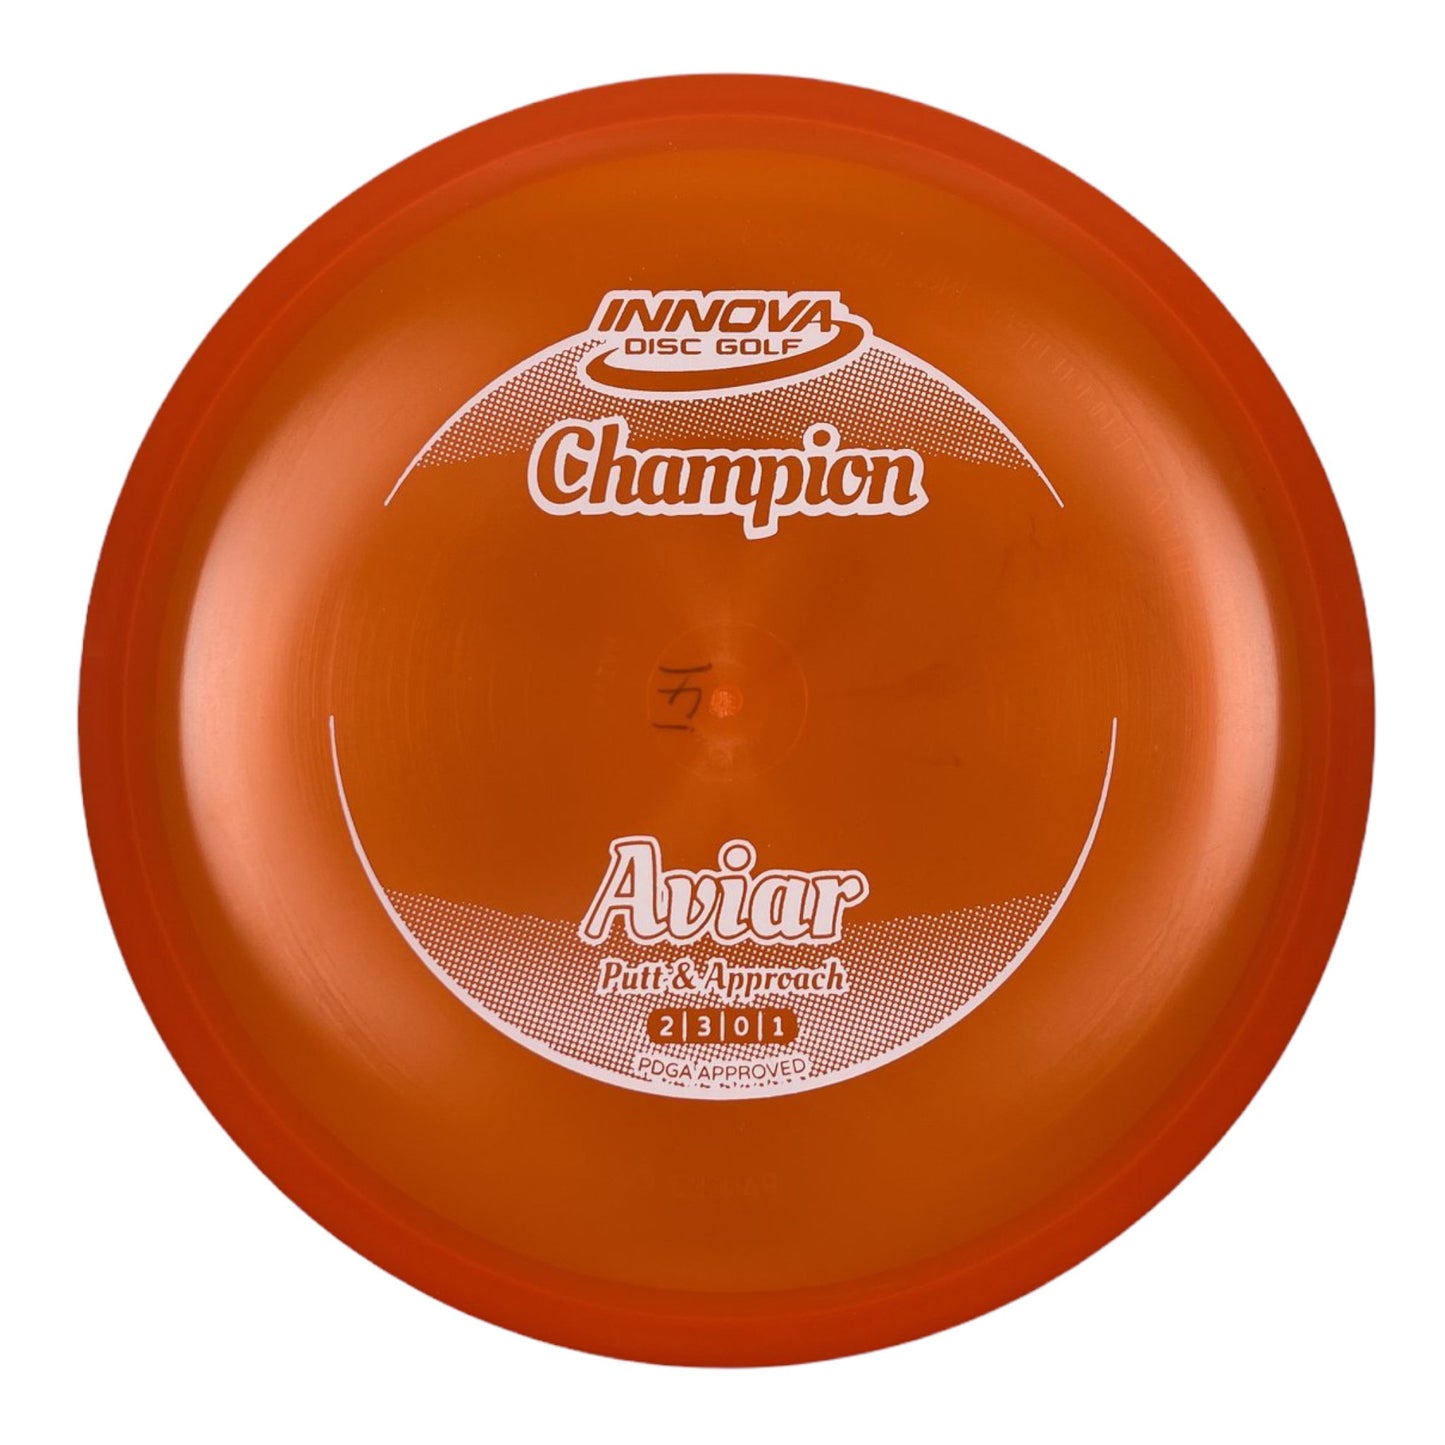 Innova Champion Discs Aviar | Champion | Orange/White 170-171g Disc Golf